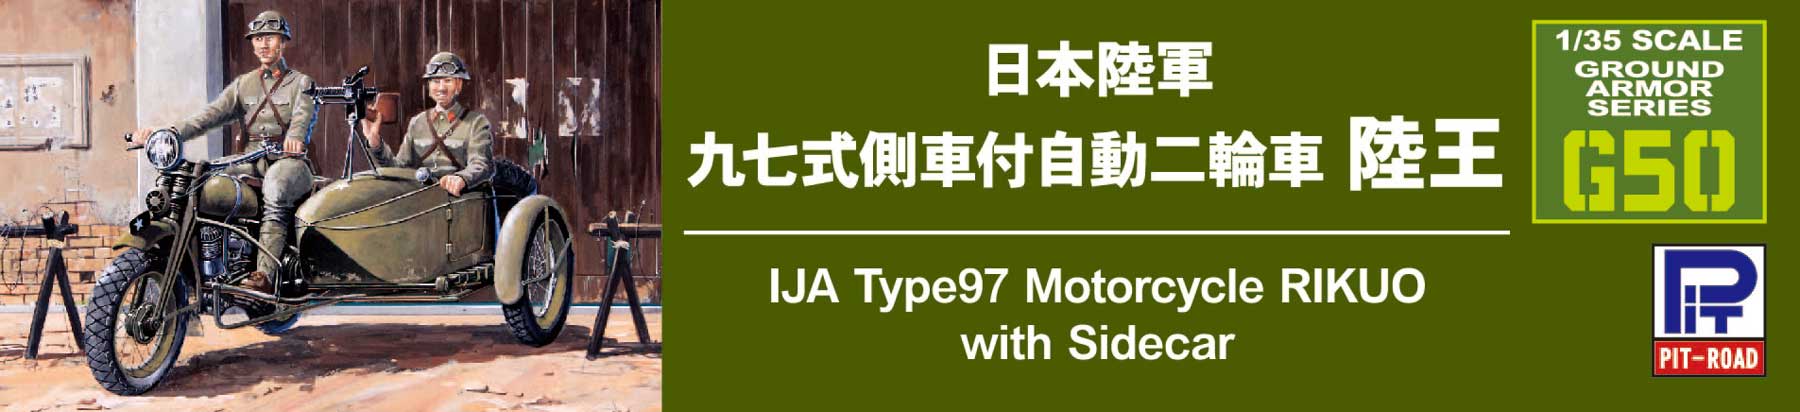 G50 1/35 日本陸軍 九七式側車付自動二輪車 陸王 – ピットロード